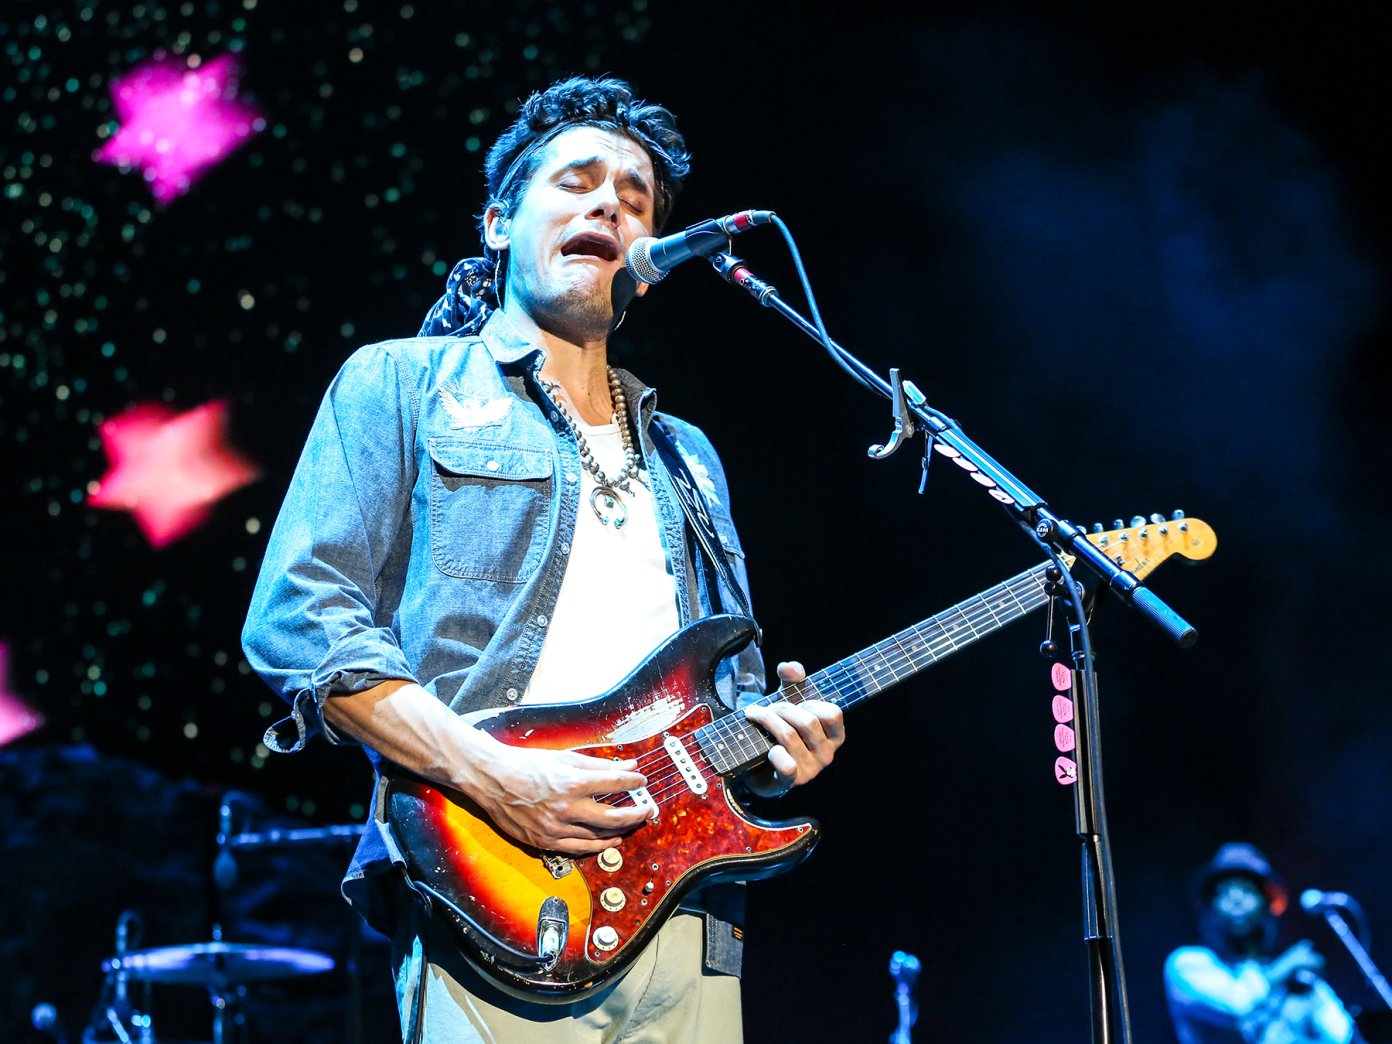 Revealed John Mayer’s pedalboard